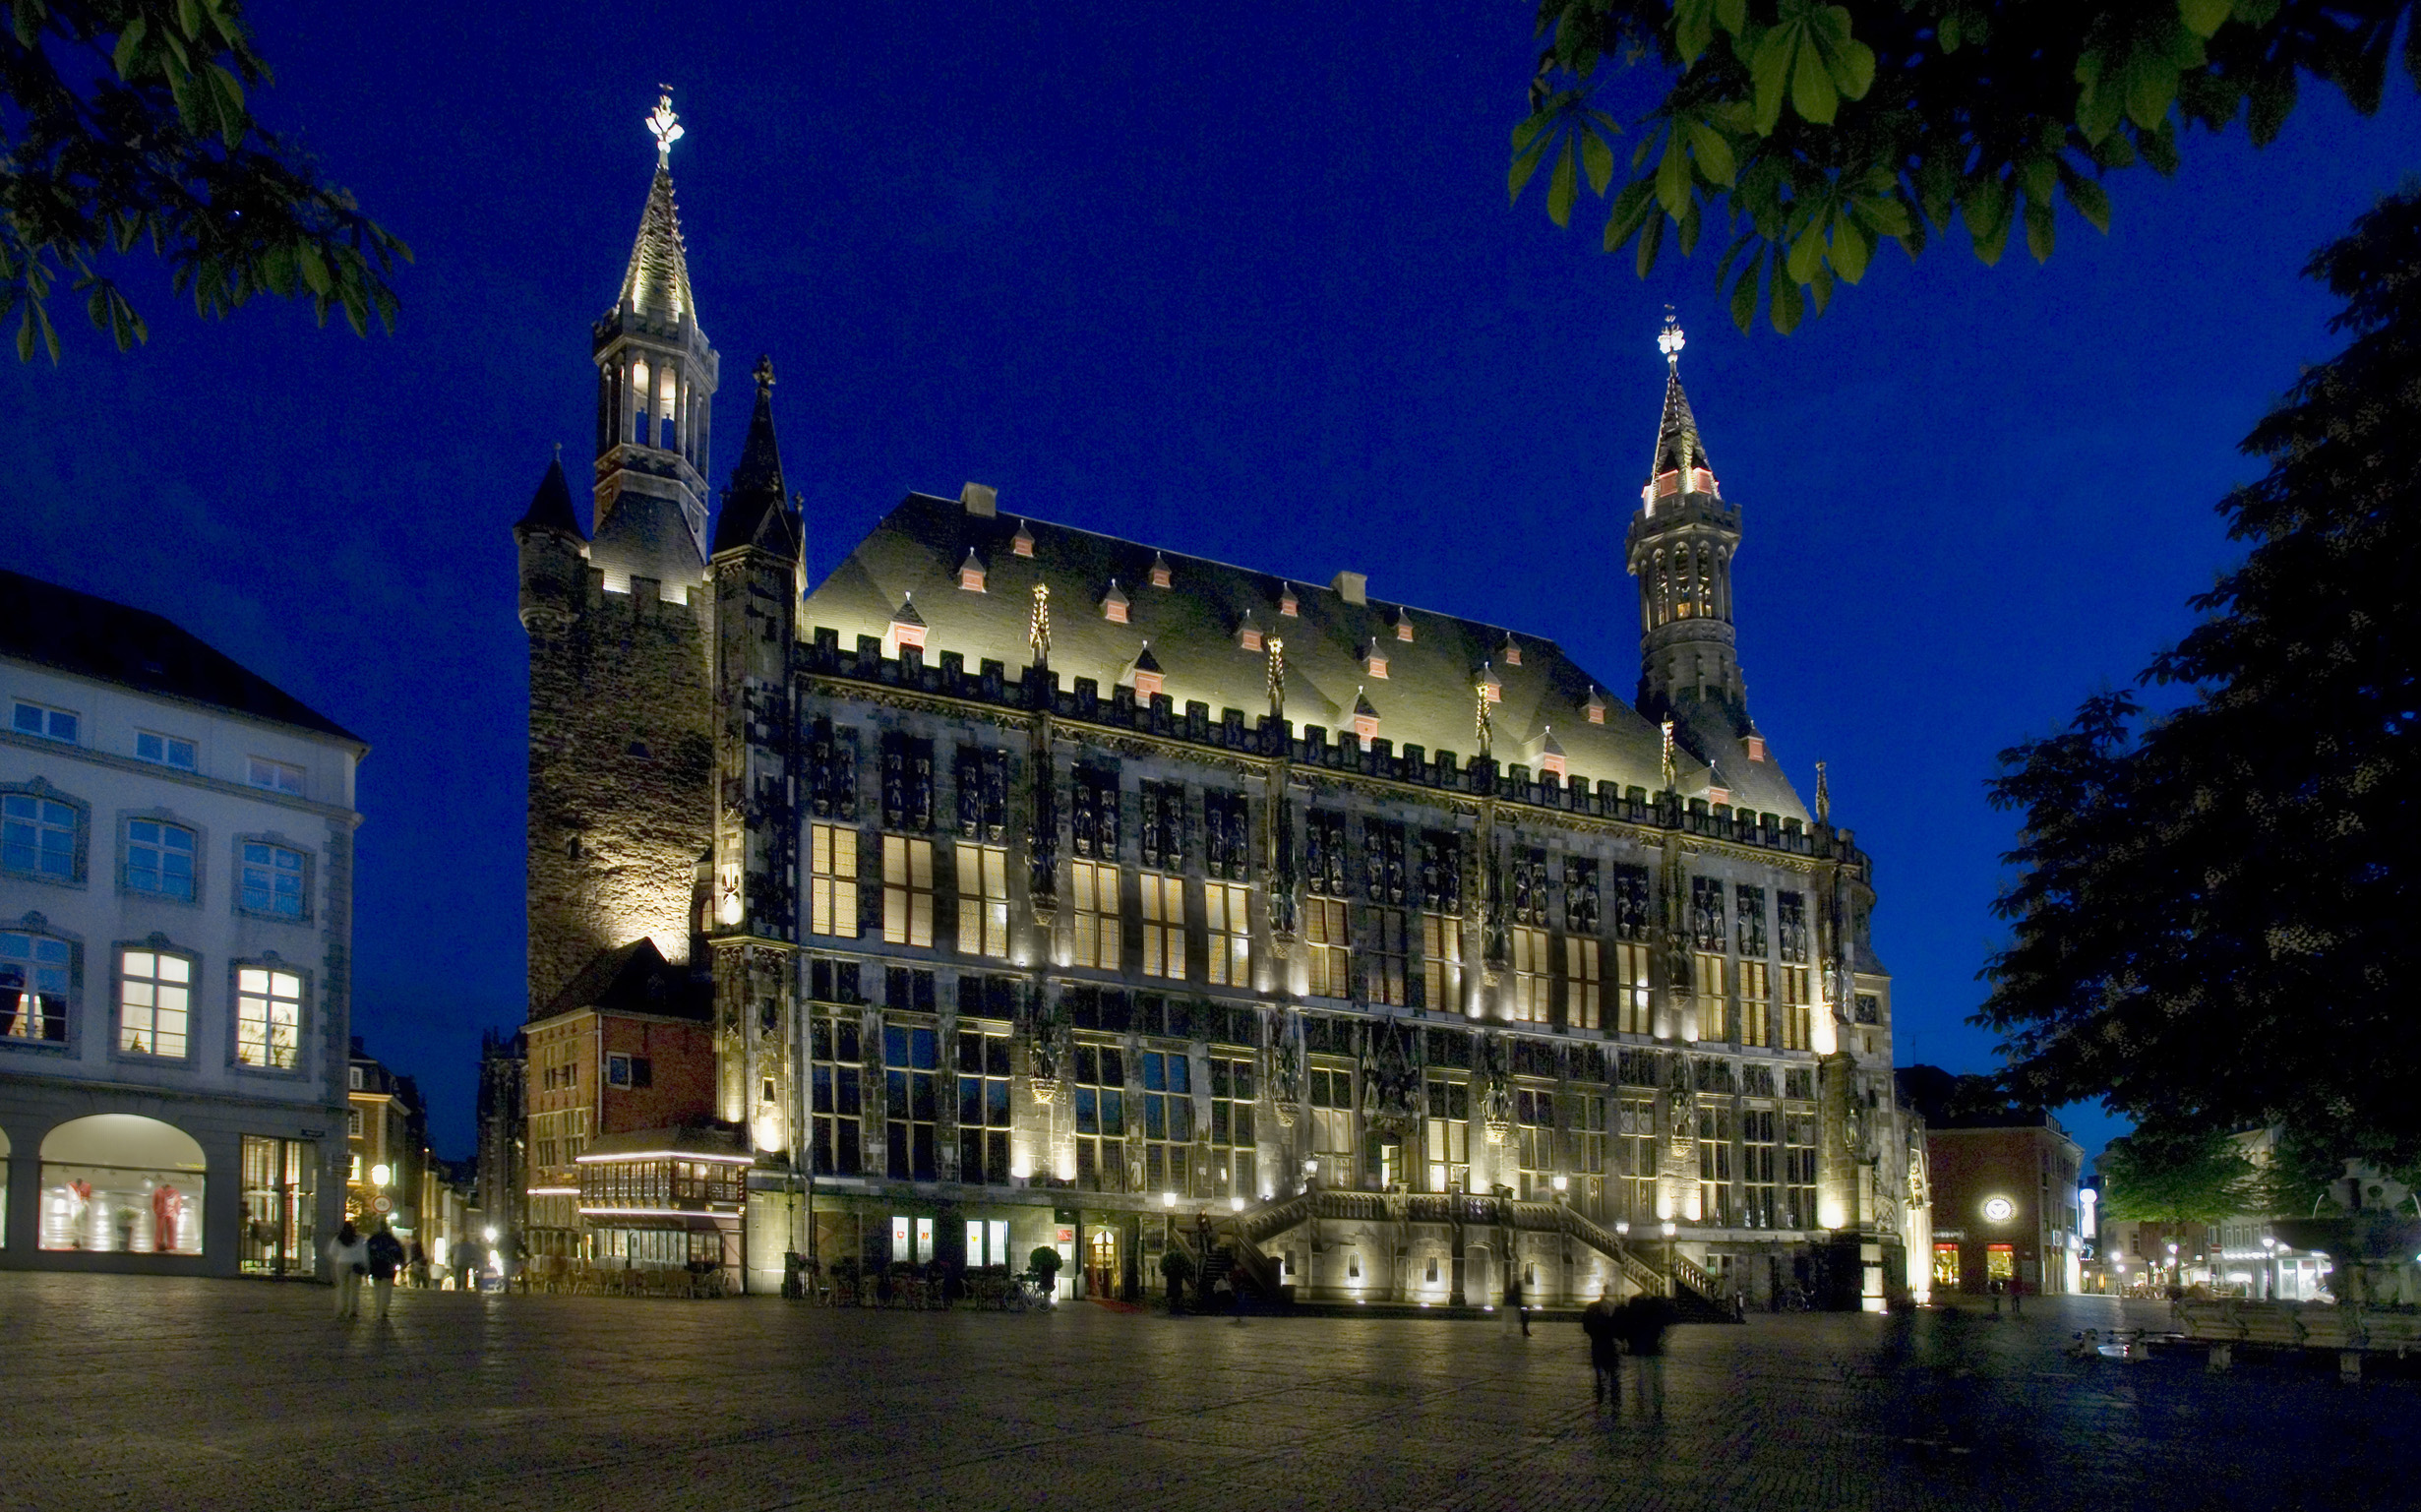 Das Aachener Rathaus im gotischen Stil wurde in der ersten Hälfte des 14. Jahrhunderts von der Aachener Bürgerschaft errichtet.